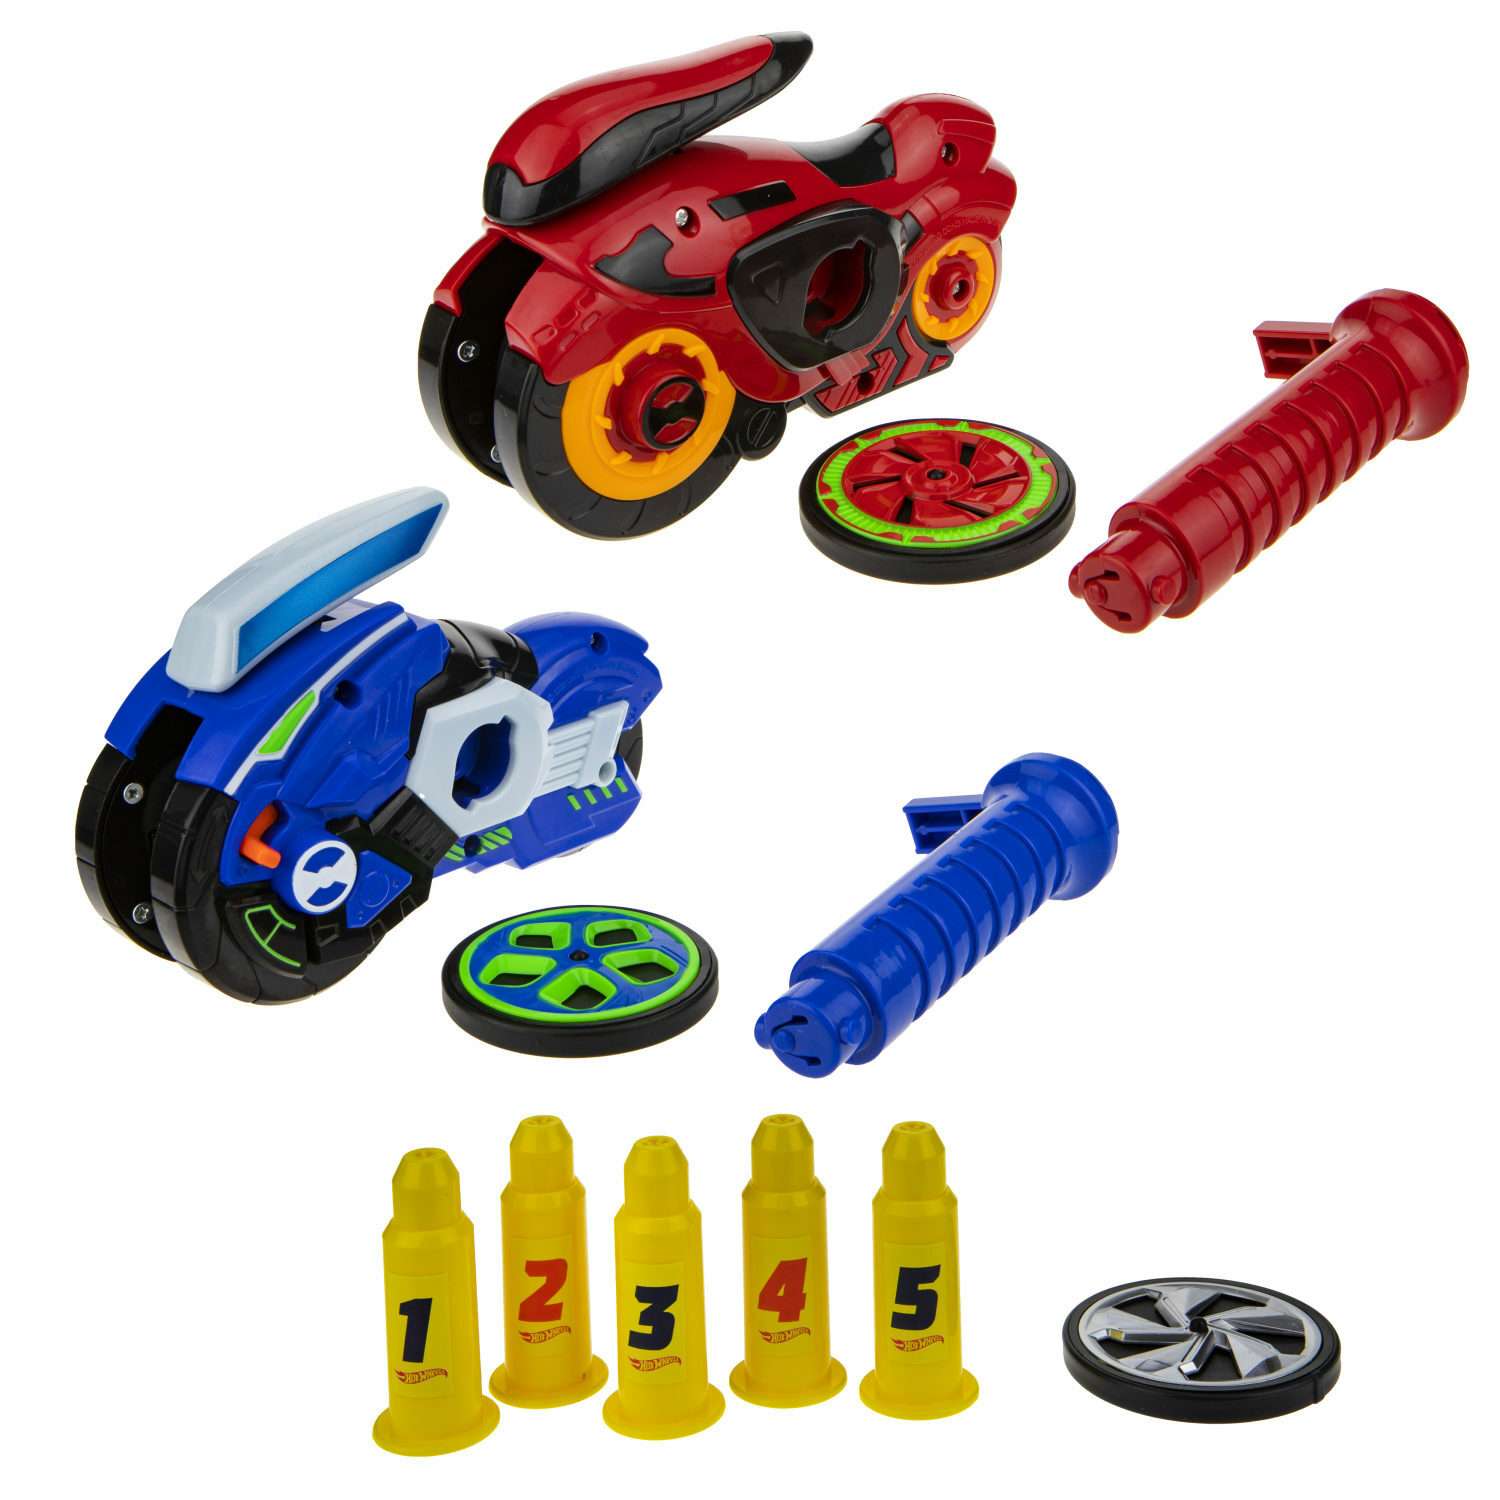 Игровой набор Hot Wheels Spin Racer Deluxe Set 2 игрушечных мотоцикла с колесами-гироскопами Т19375 - фото 6